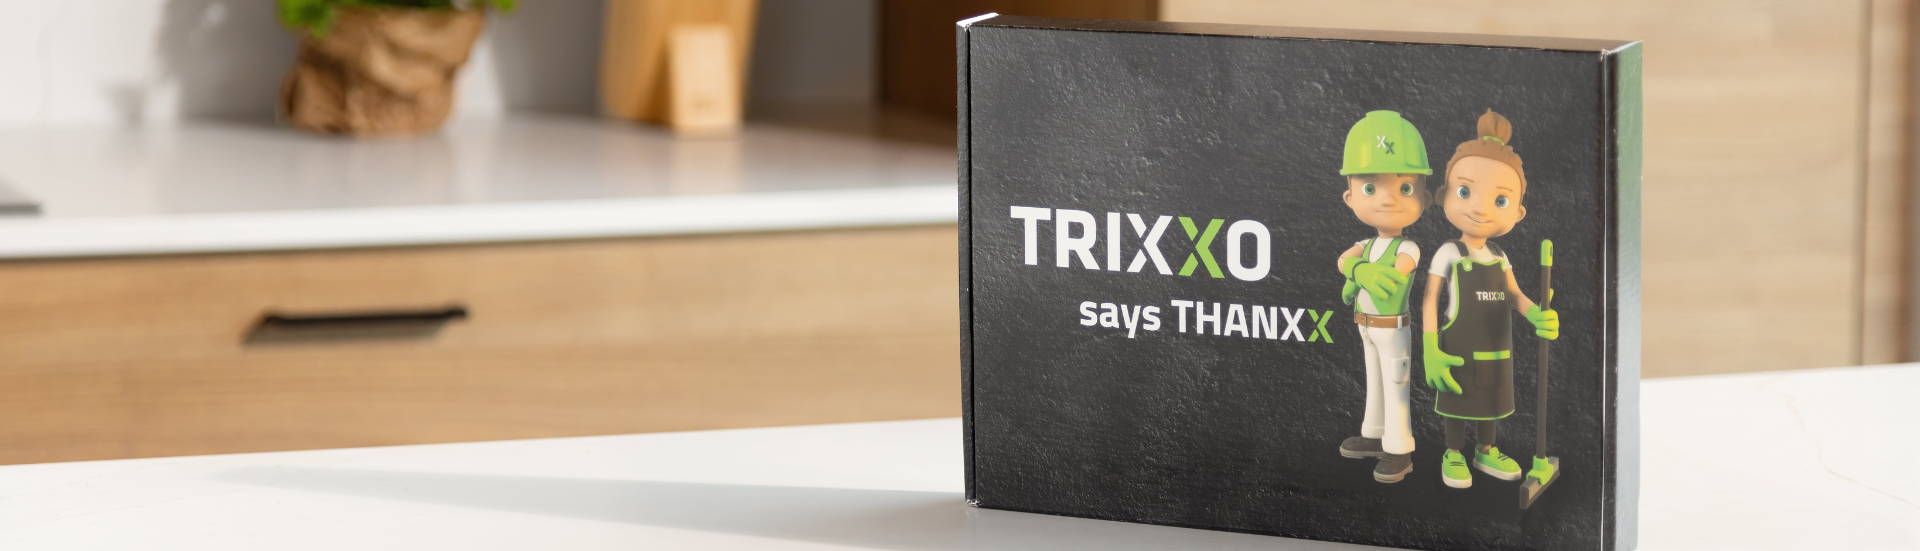 Originele en duurzame eindejaarsgeschenken voor bedrijven - Ontdek de gepersonaliseerde GiftBox van BergHOFF Belgium, gecreëerd voor TRIXXO, het grootste autonome dienstenchequebedrijf van België.